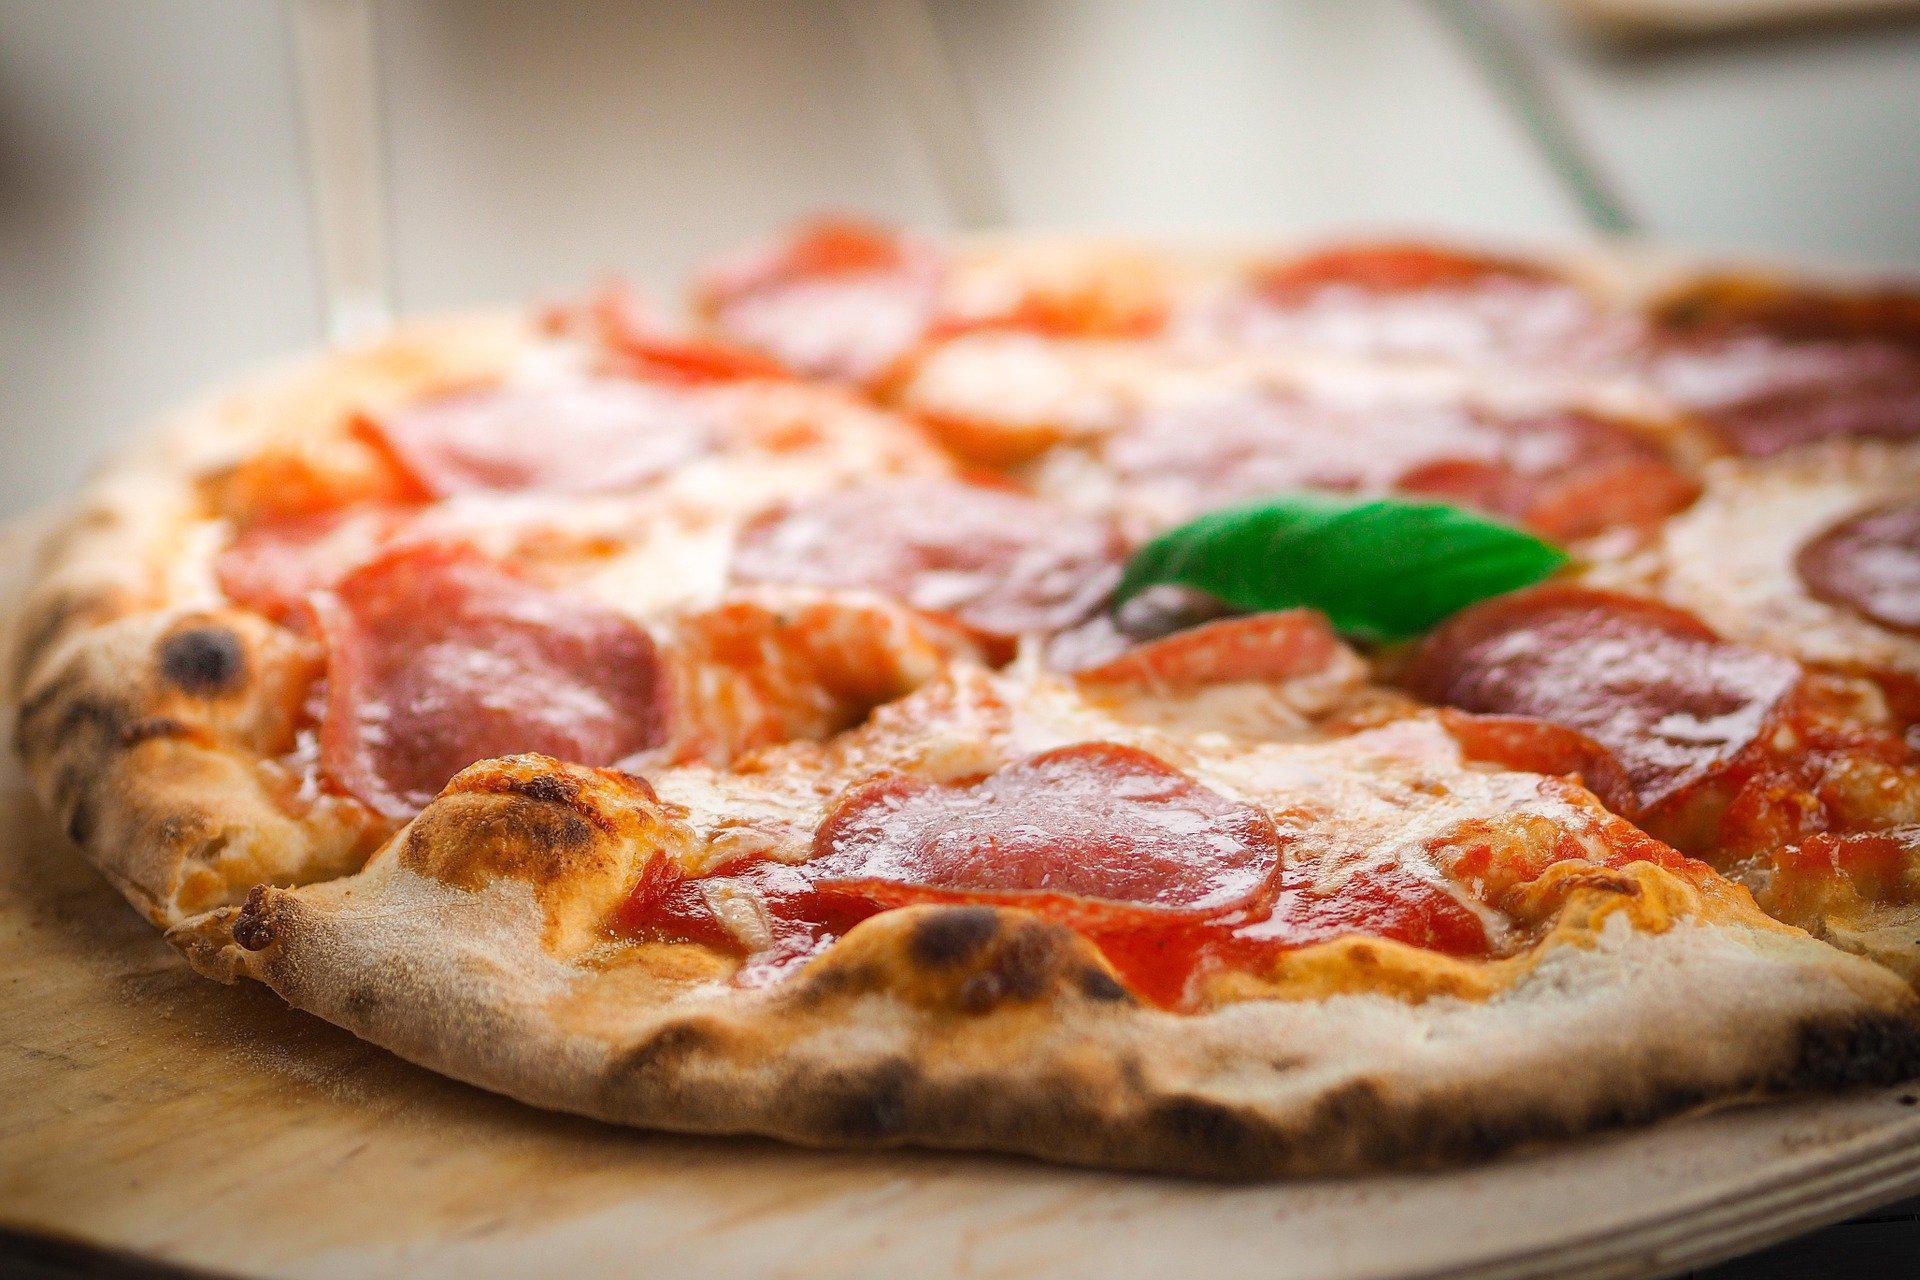 كيف يجب تسخين البيتزا؟  كيفية تسخين البيتزا الجاهزة من مخلفات الطعام؟